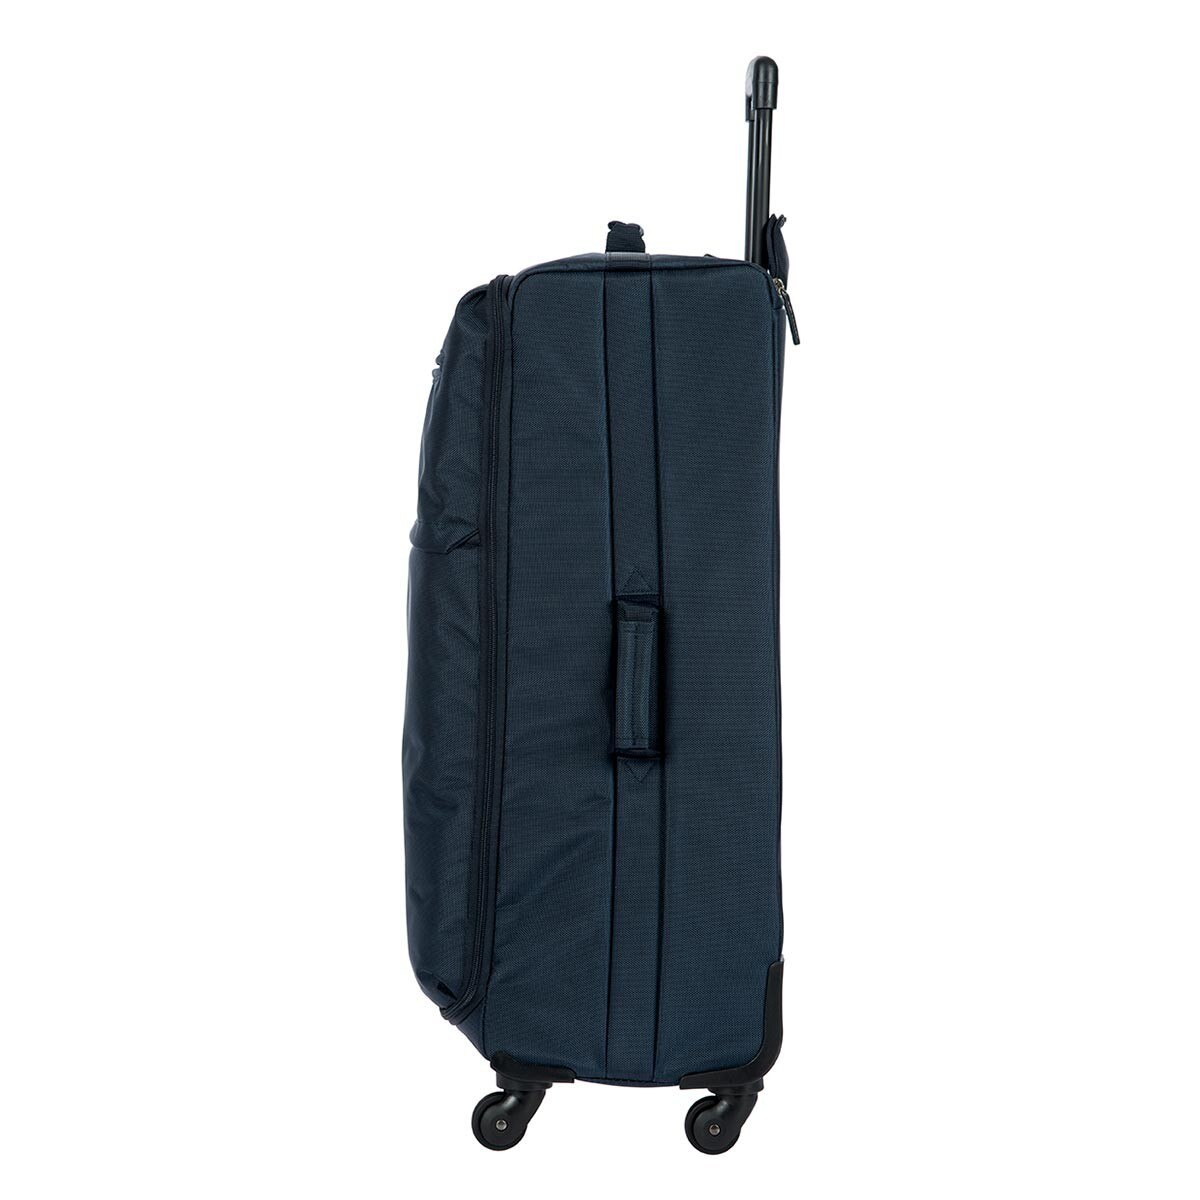 Bric's Siena 系列 30吋行李箱 藍色